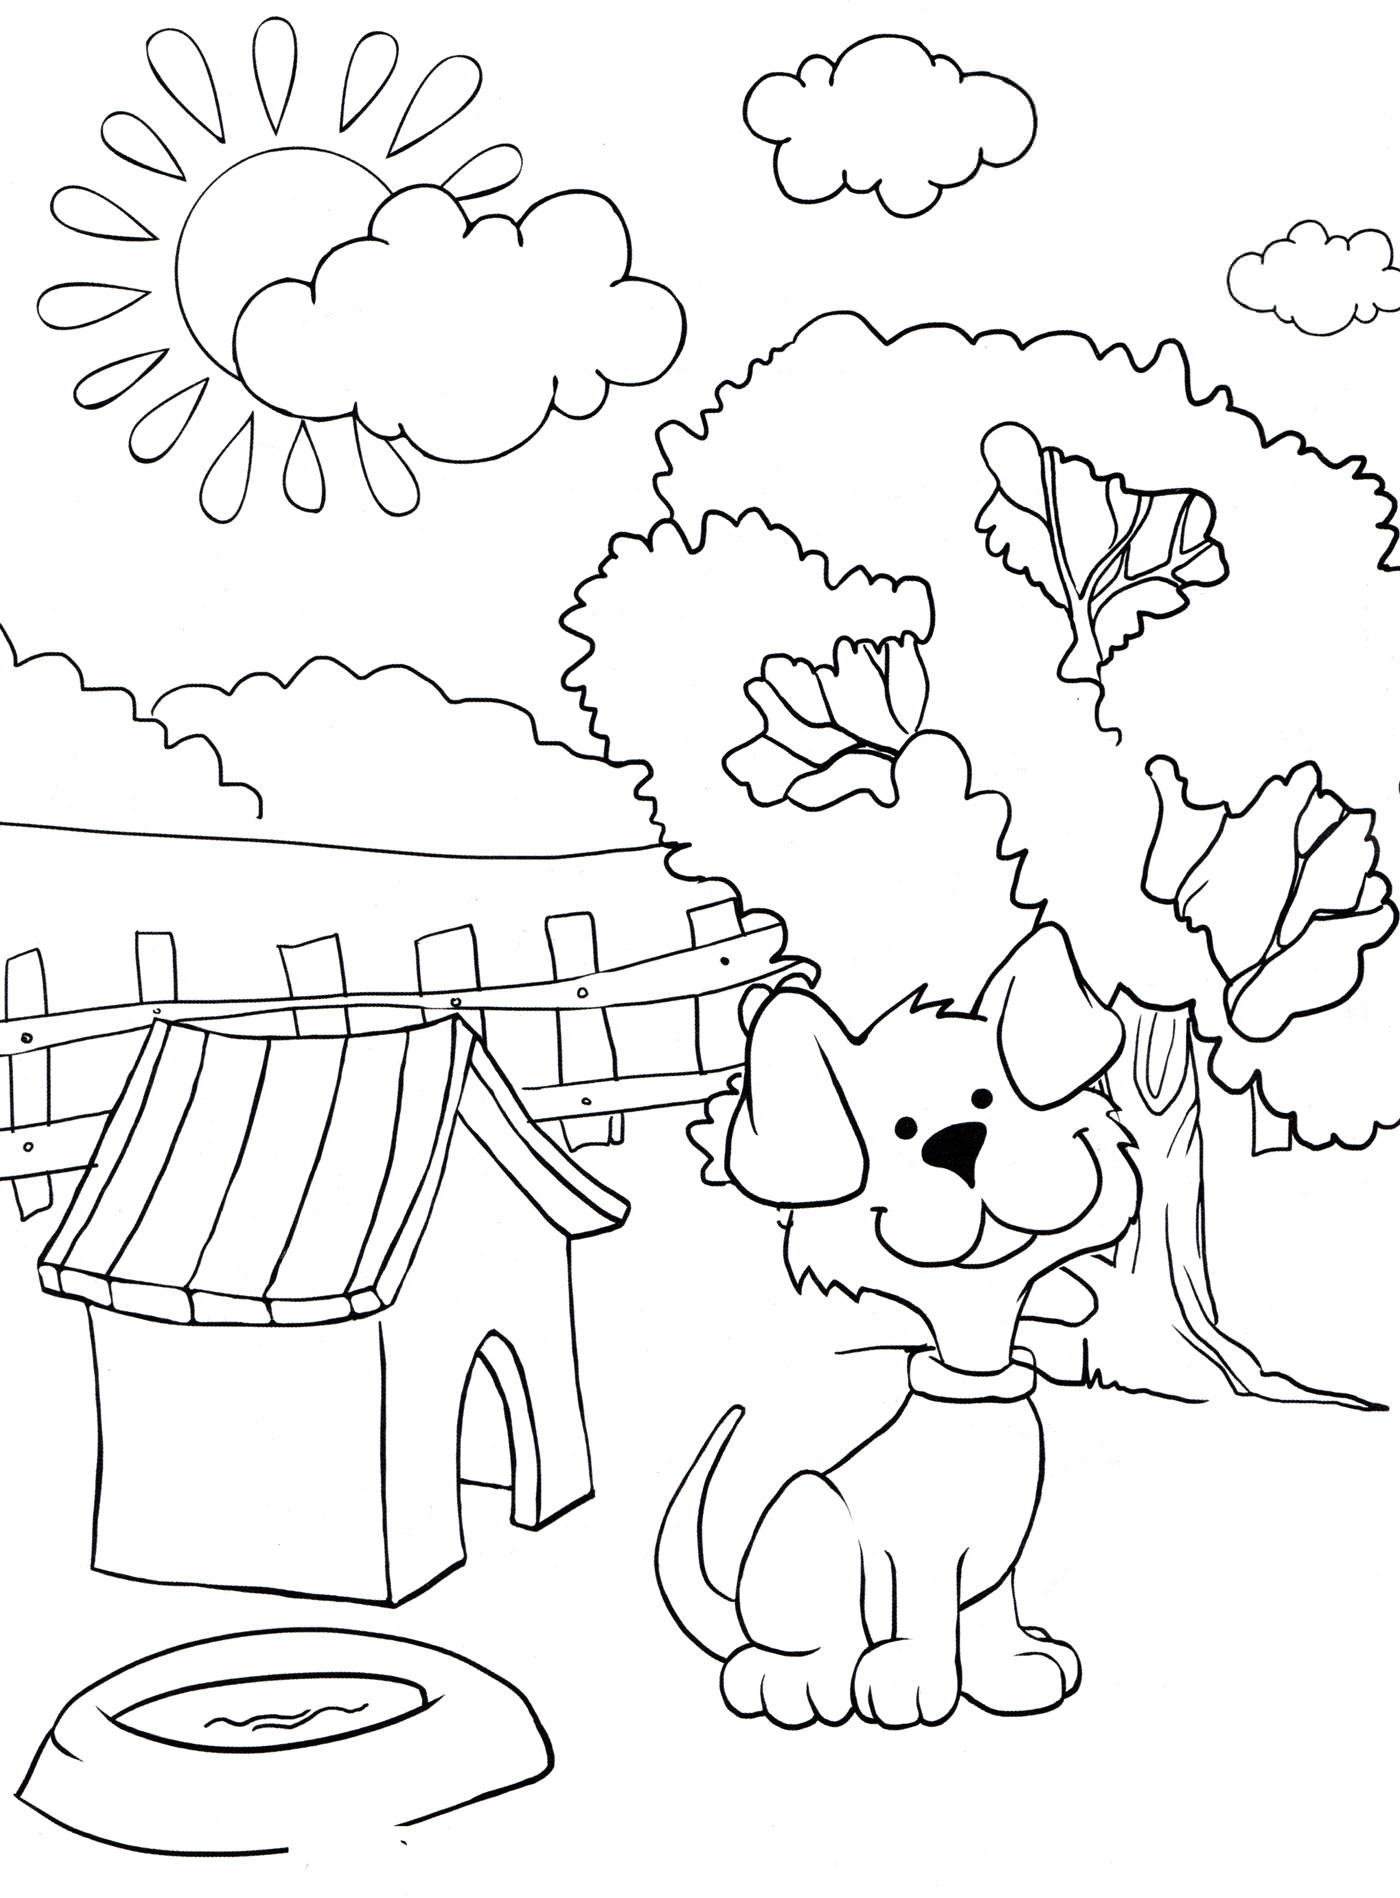 Розмальовка Собака біля будки